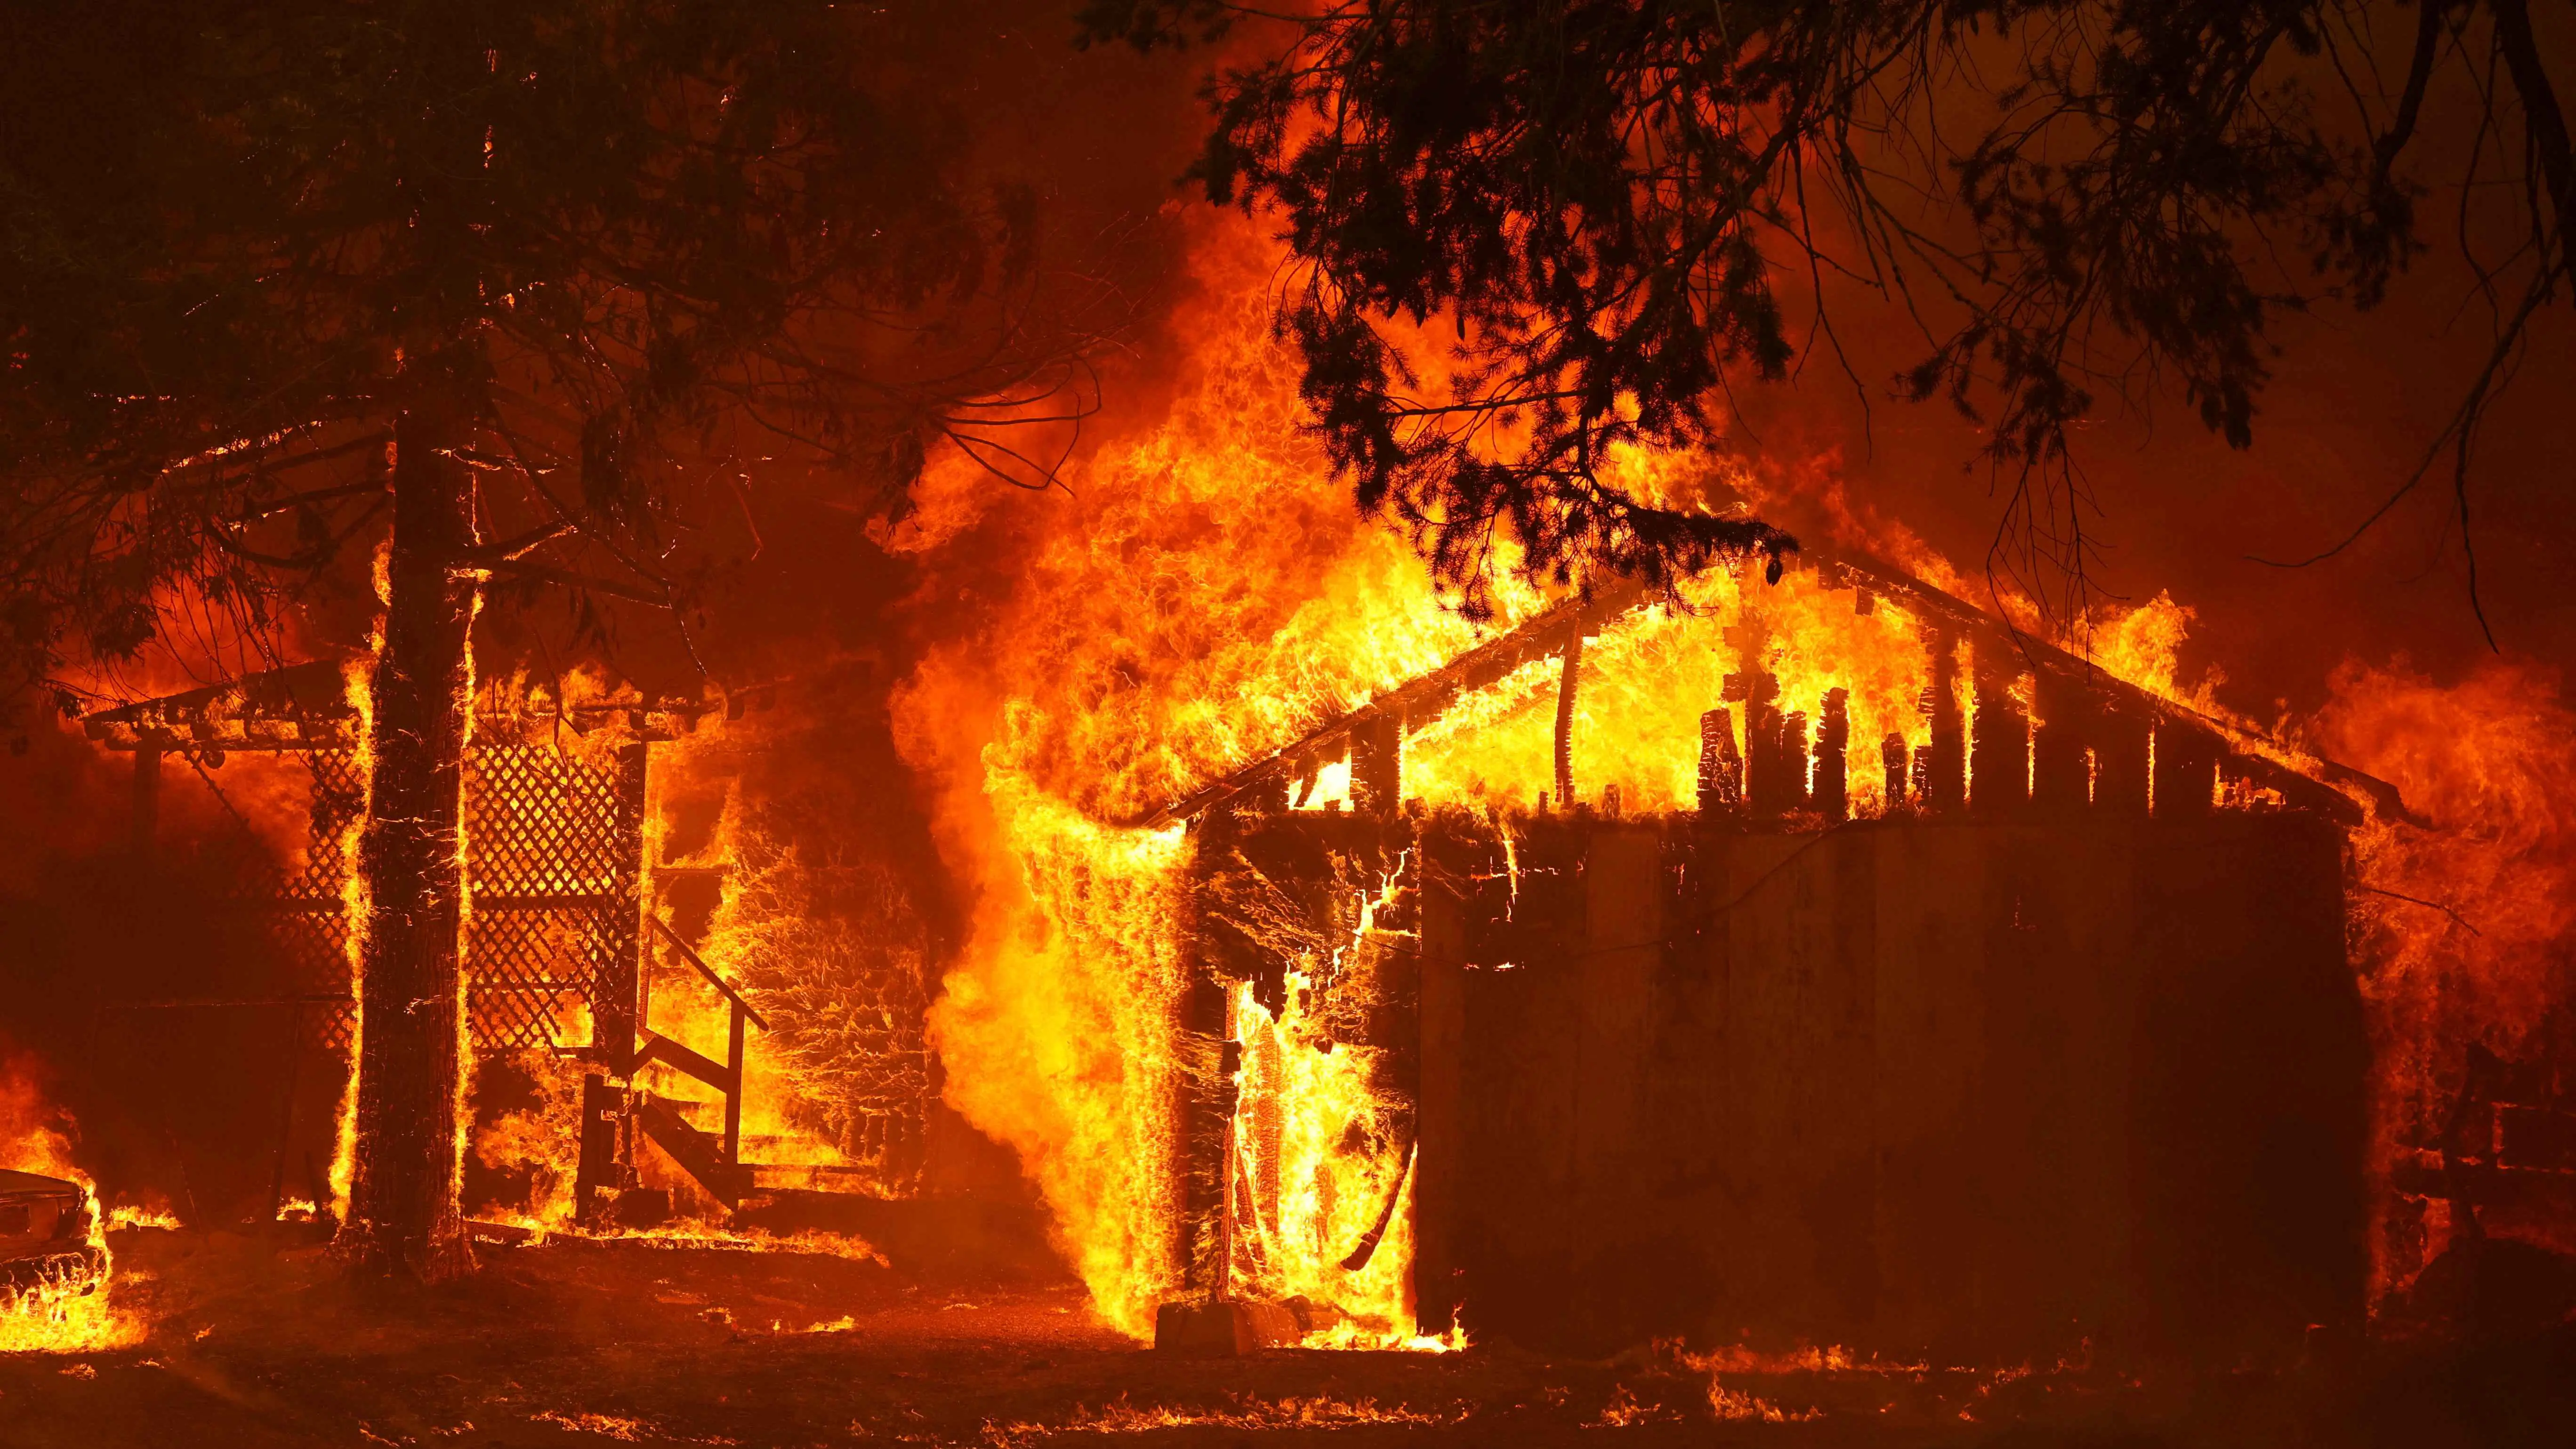 أستراليا.. حريق يودي بحياة 3 أطفال والشرطة تشتبه في جريمة